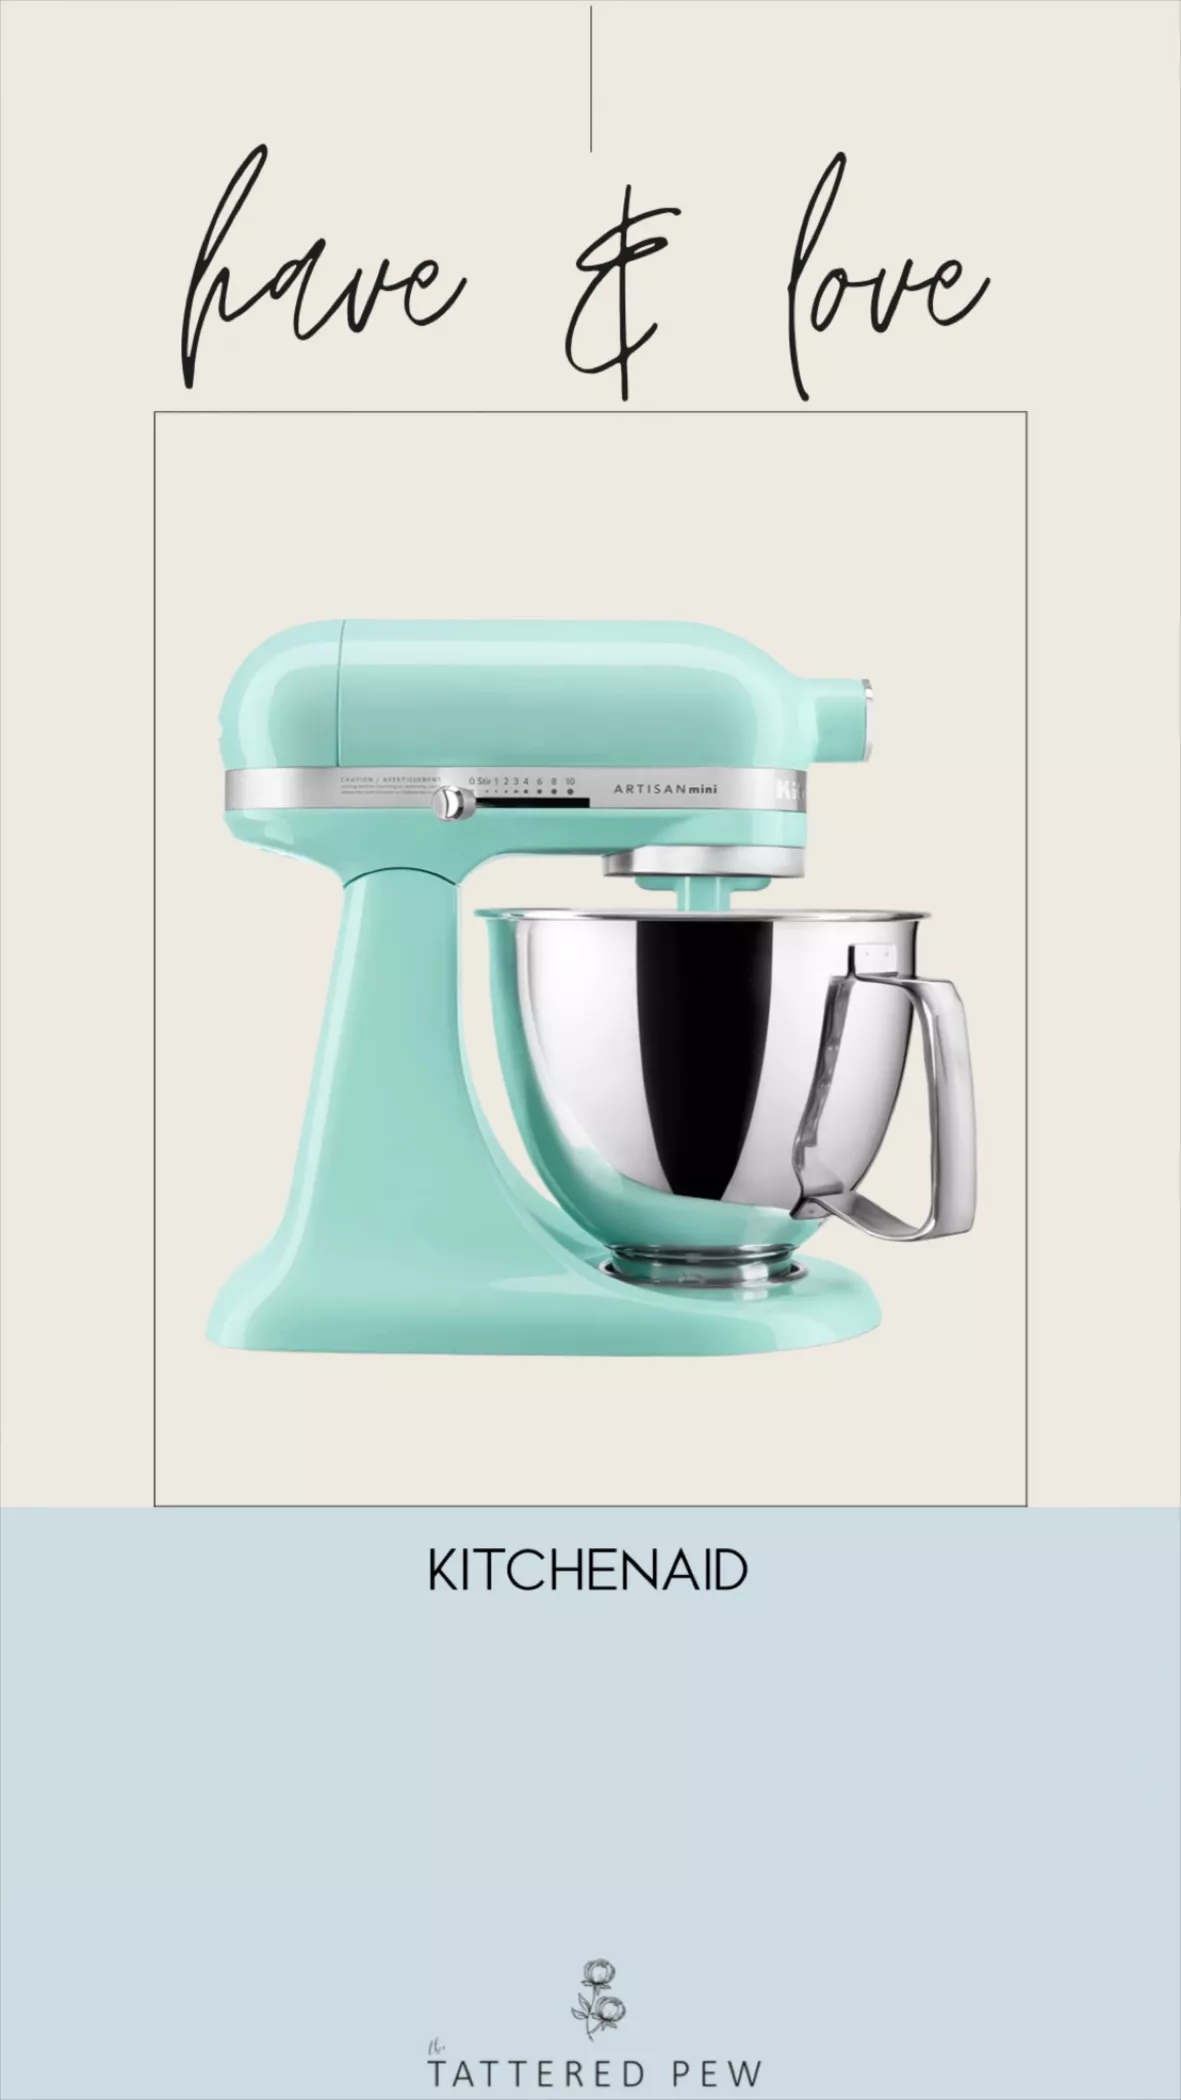 Kitchenaid Artisan Mini Plus … curated on LTK